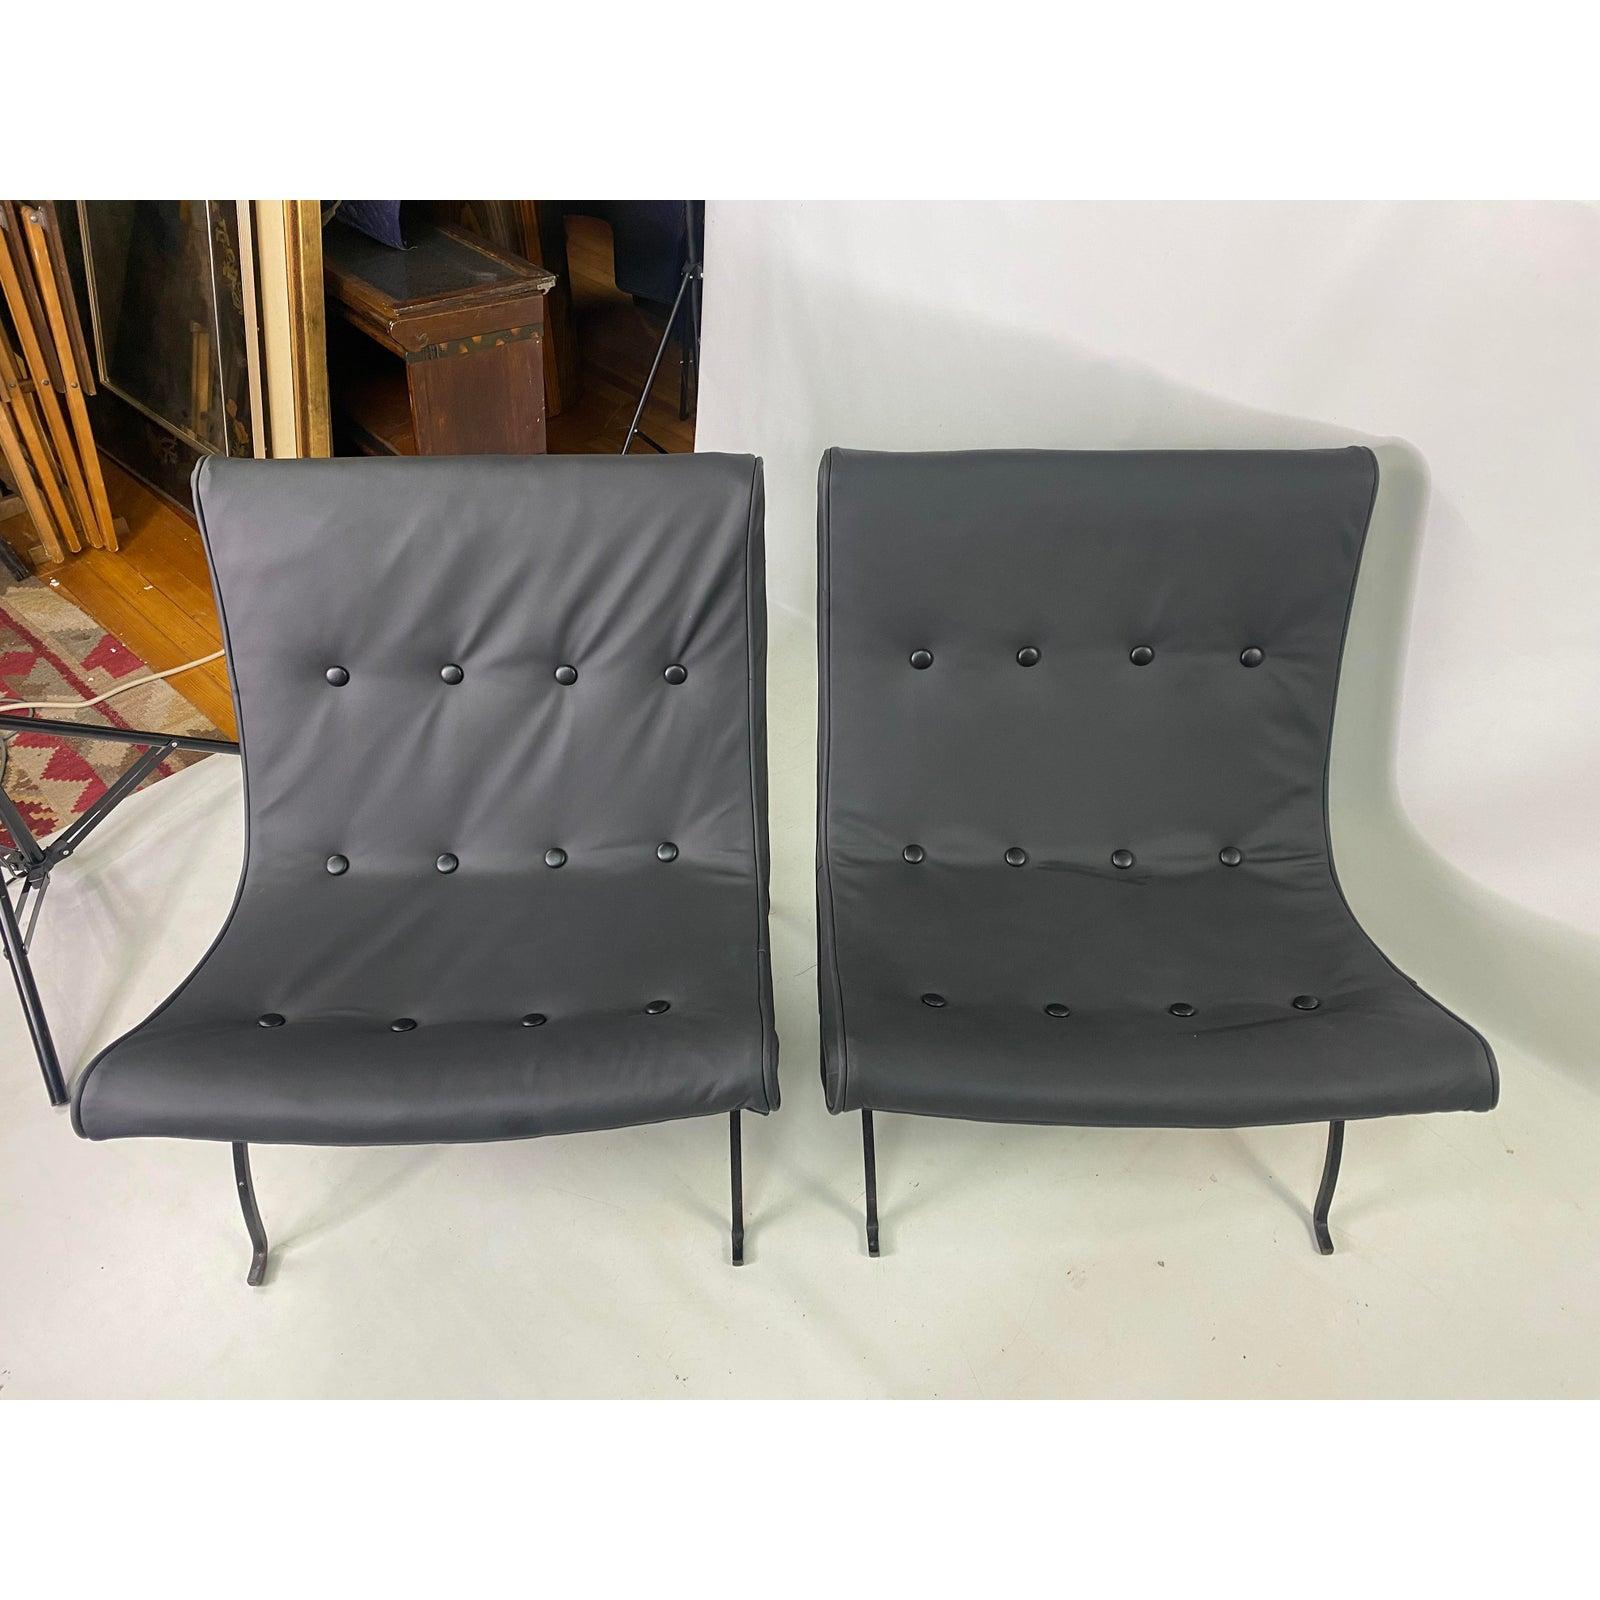 Paire de chaises en cuir Milo Baughman de style moderne du milieu du siècle. Les chaises ont été récemment recouvertes de cuir.